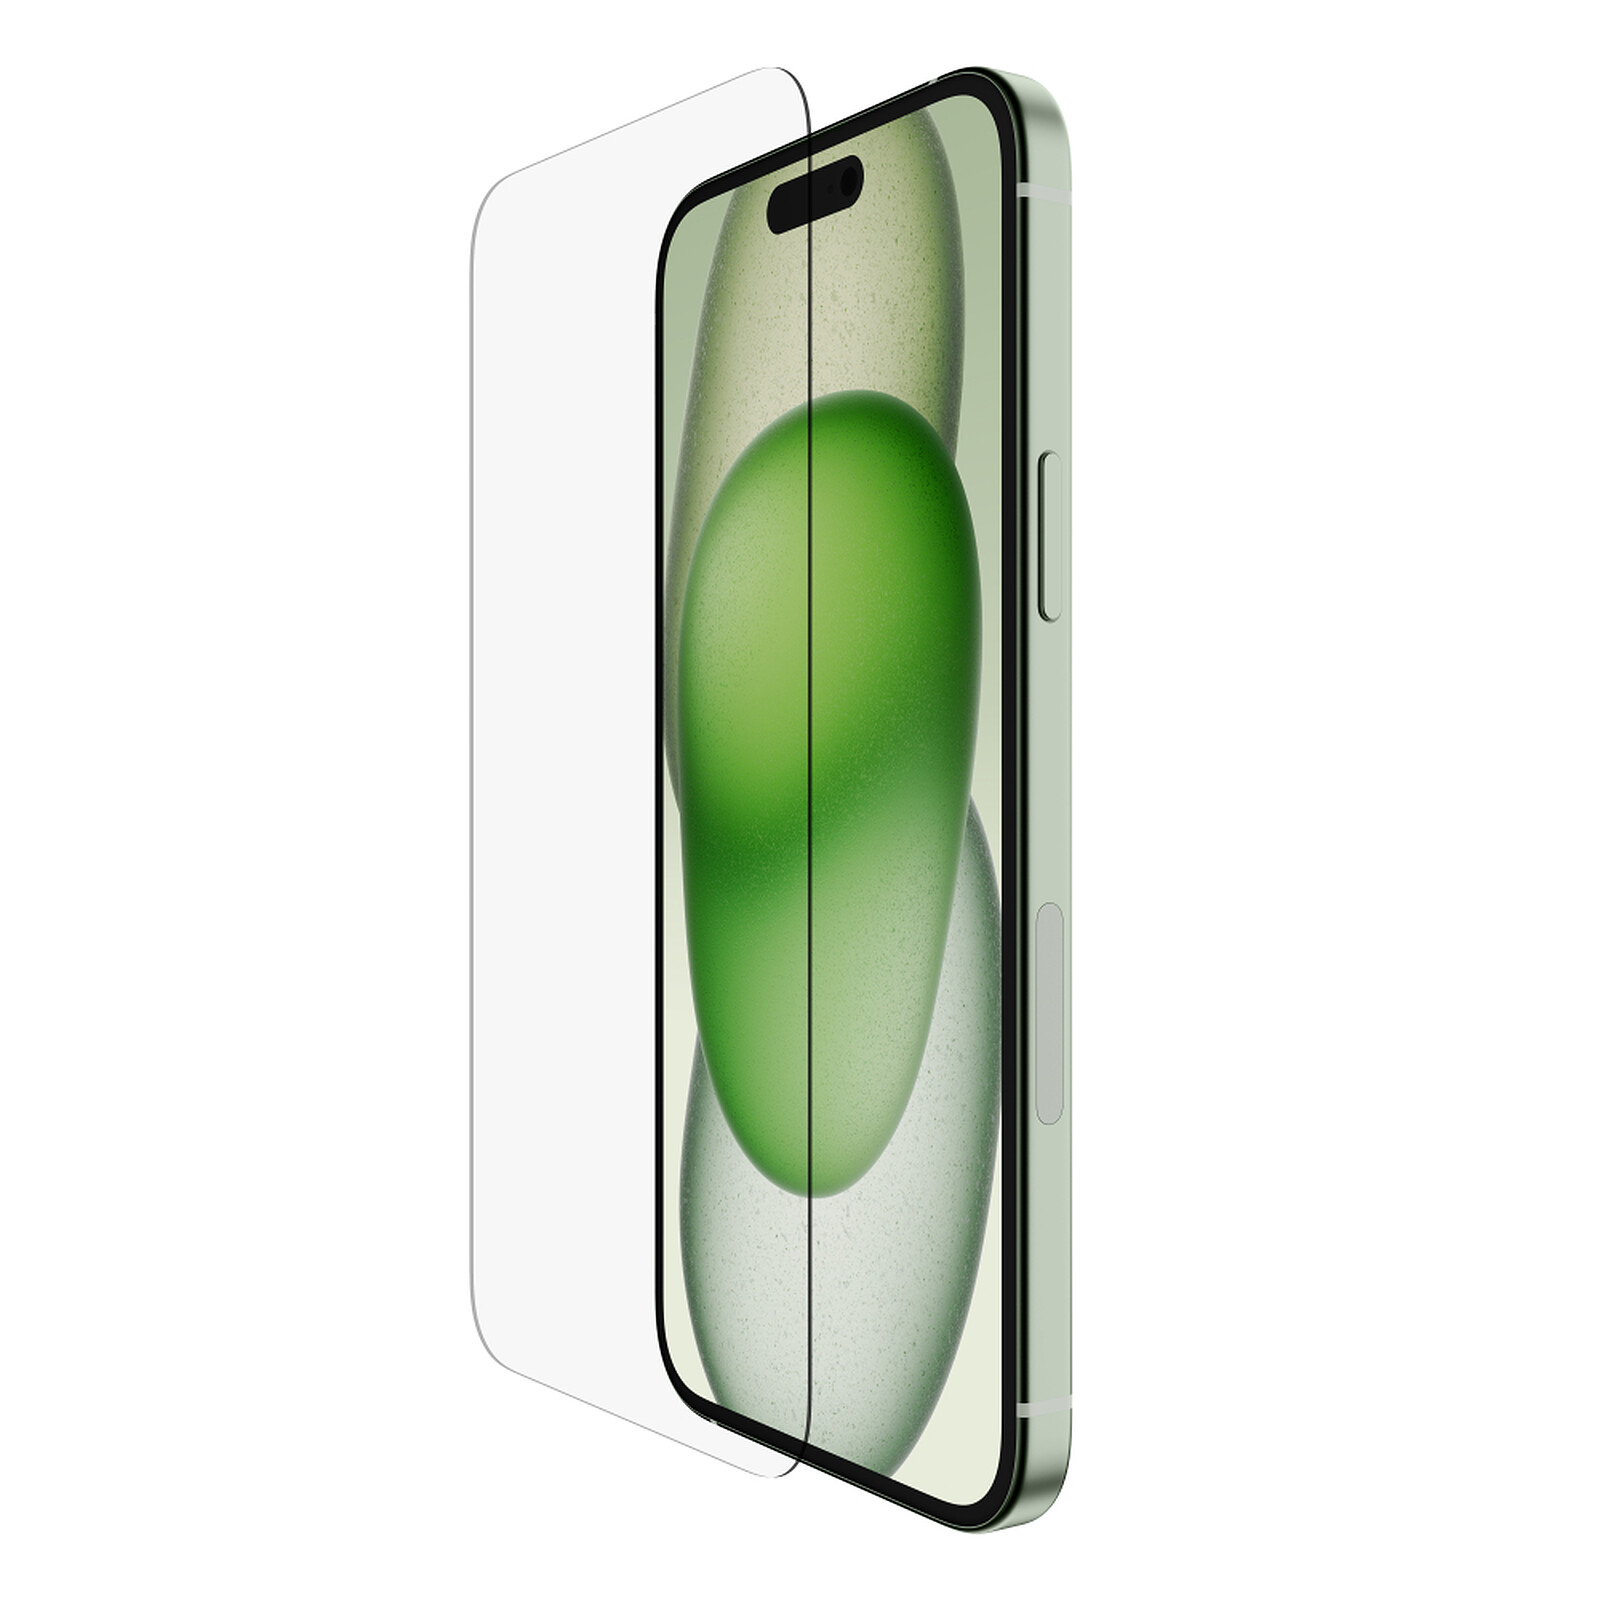 Protector de pantalla UltraGlass de Belkin para el iPhone 12 mini - Apple  (ES)